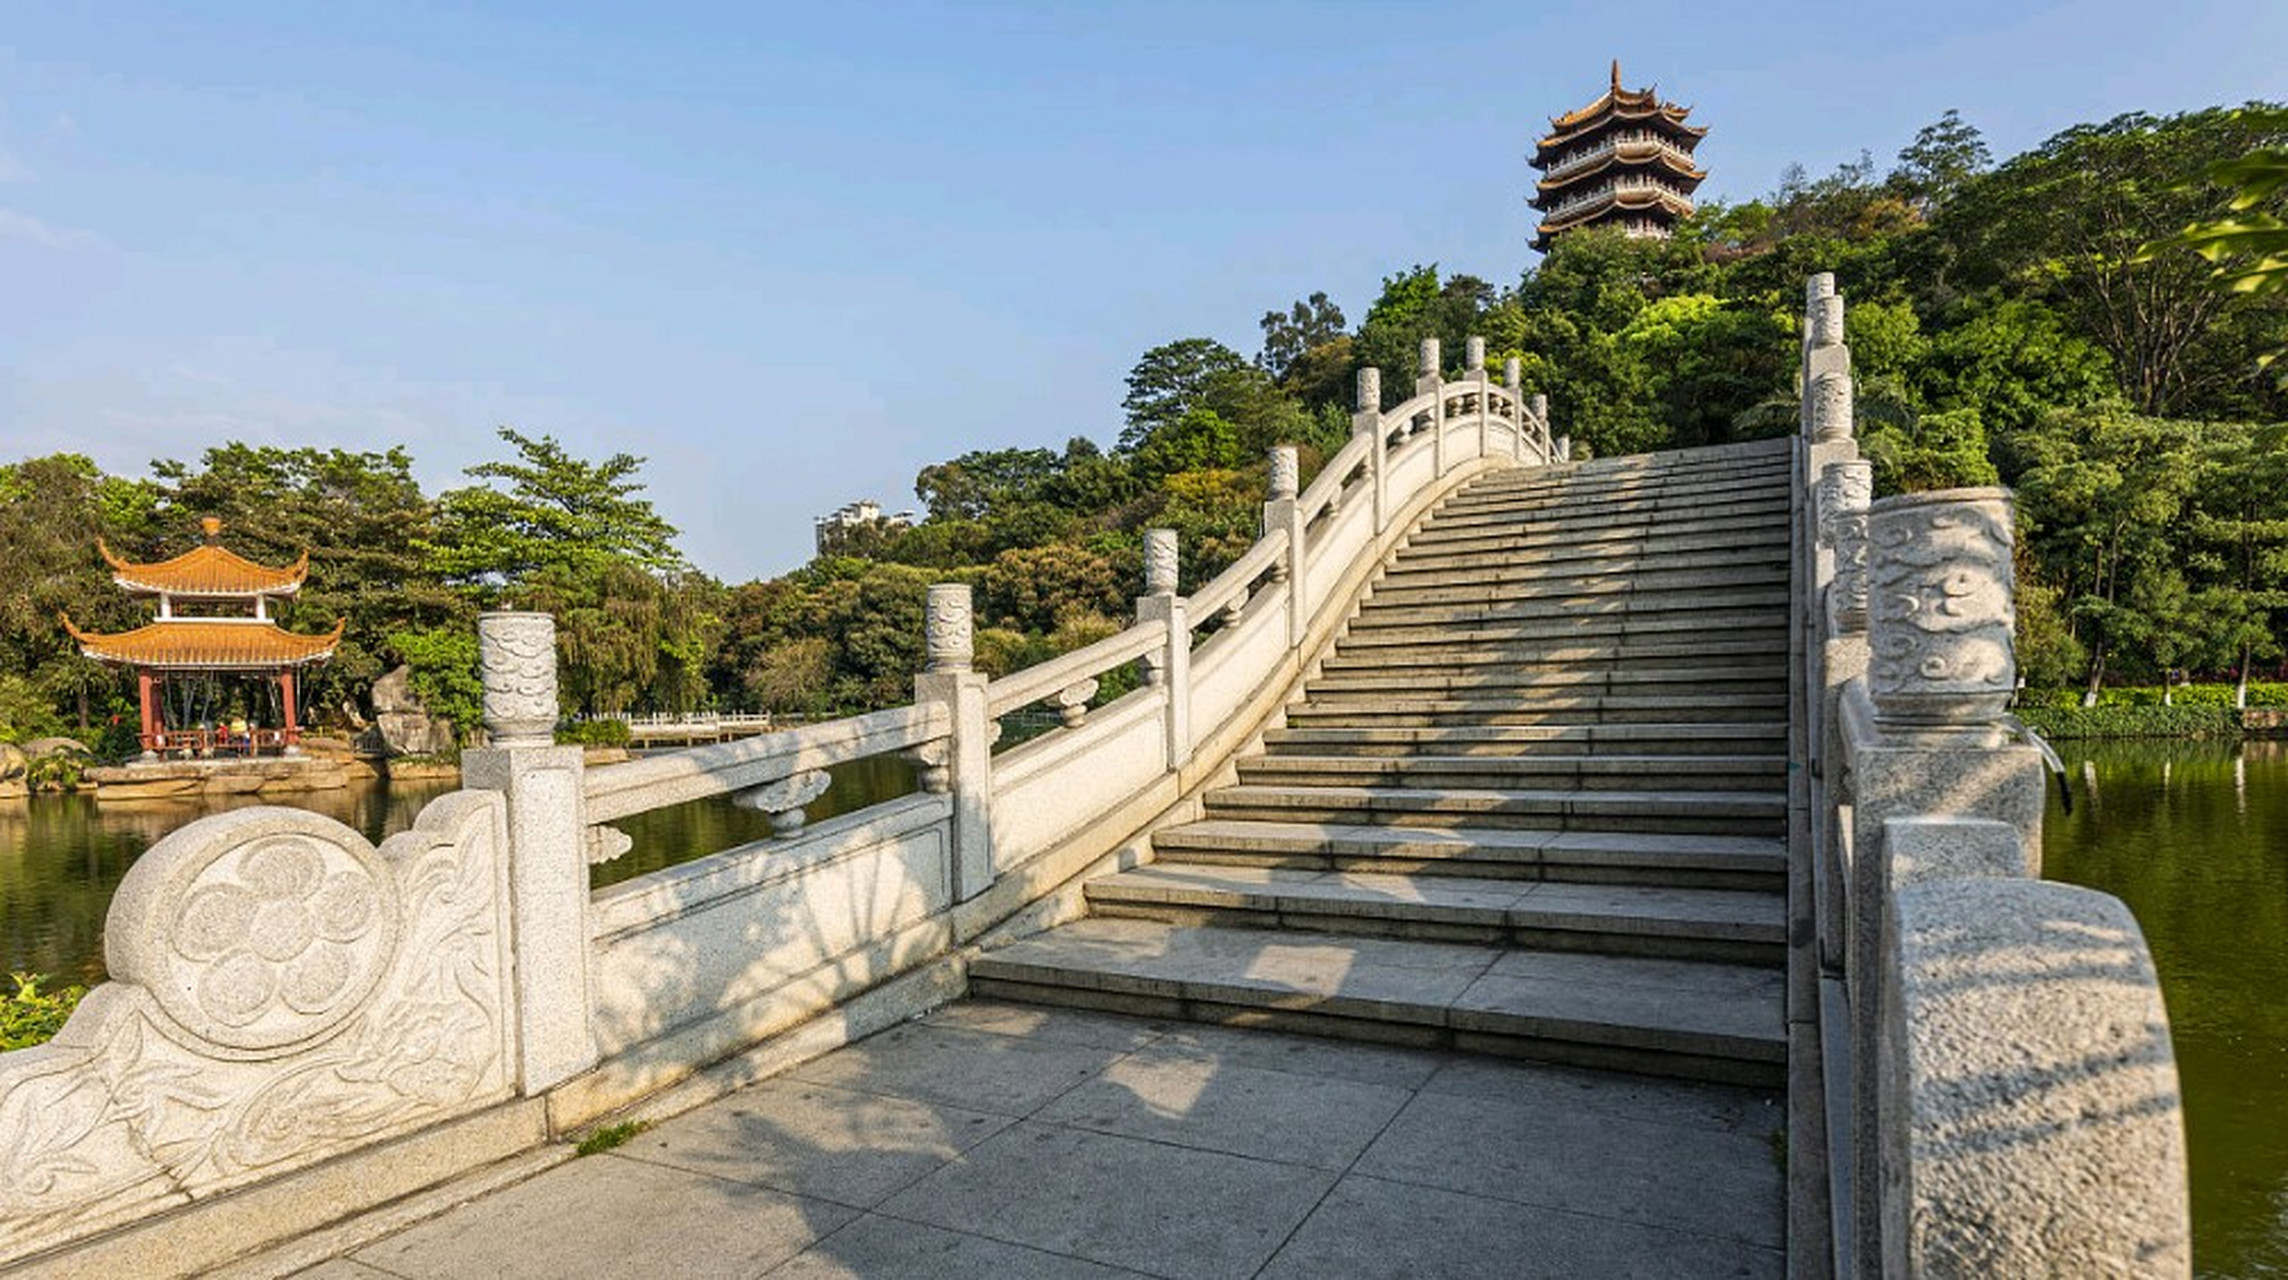 长安公园不仅是当地居民休闲娱乐的好去处,也吸引了众多游客前来游览